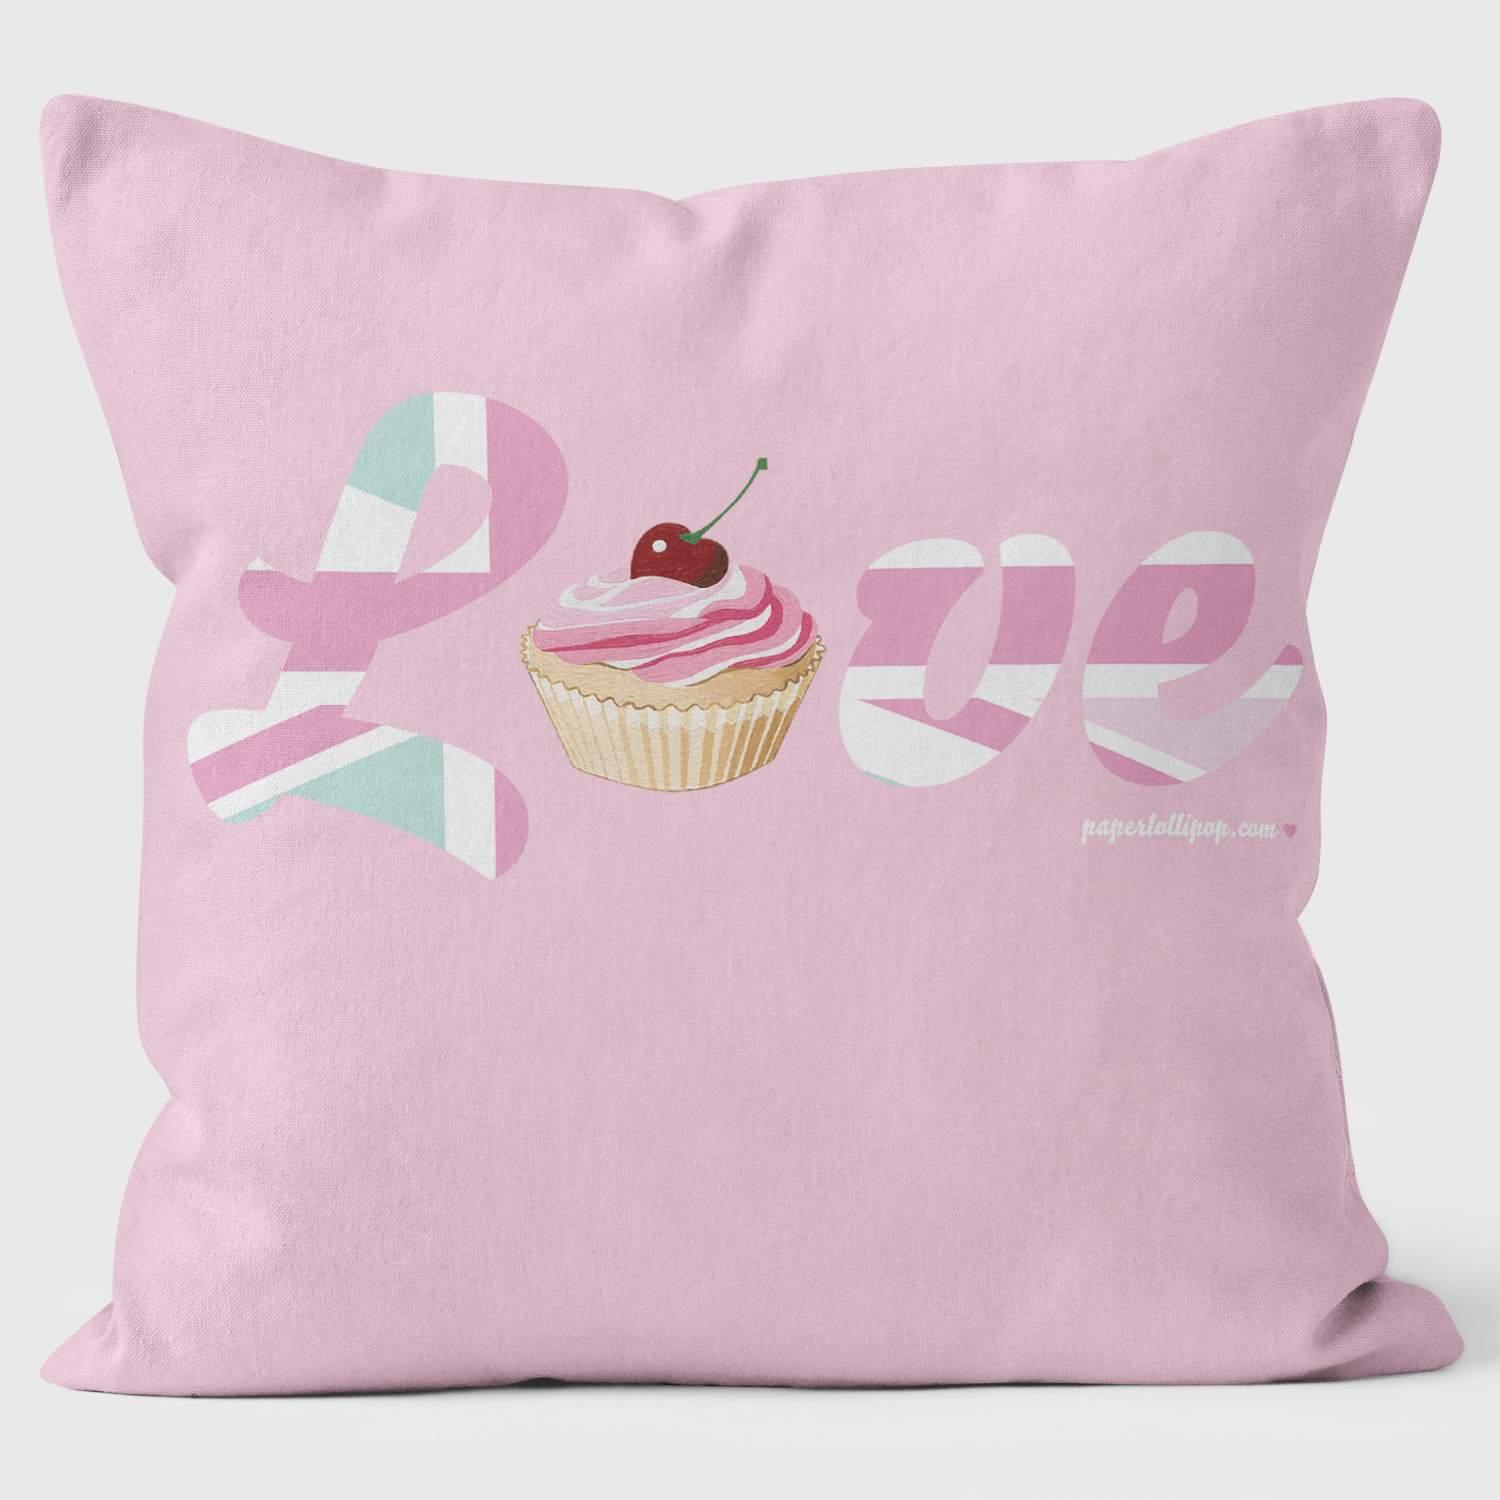 LOVE - Paperlollipop Pillows